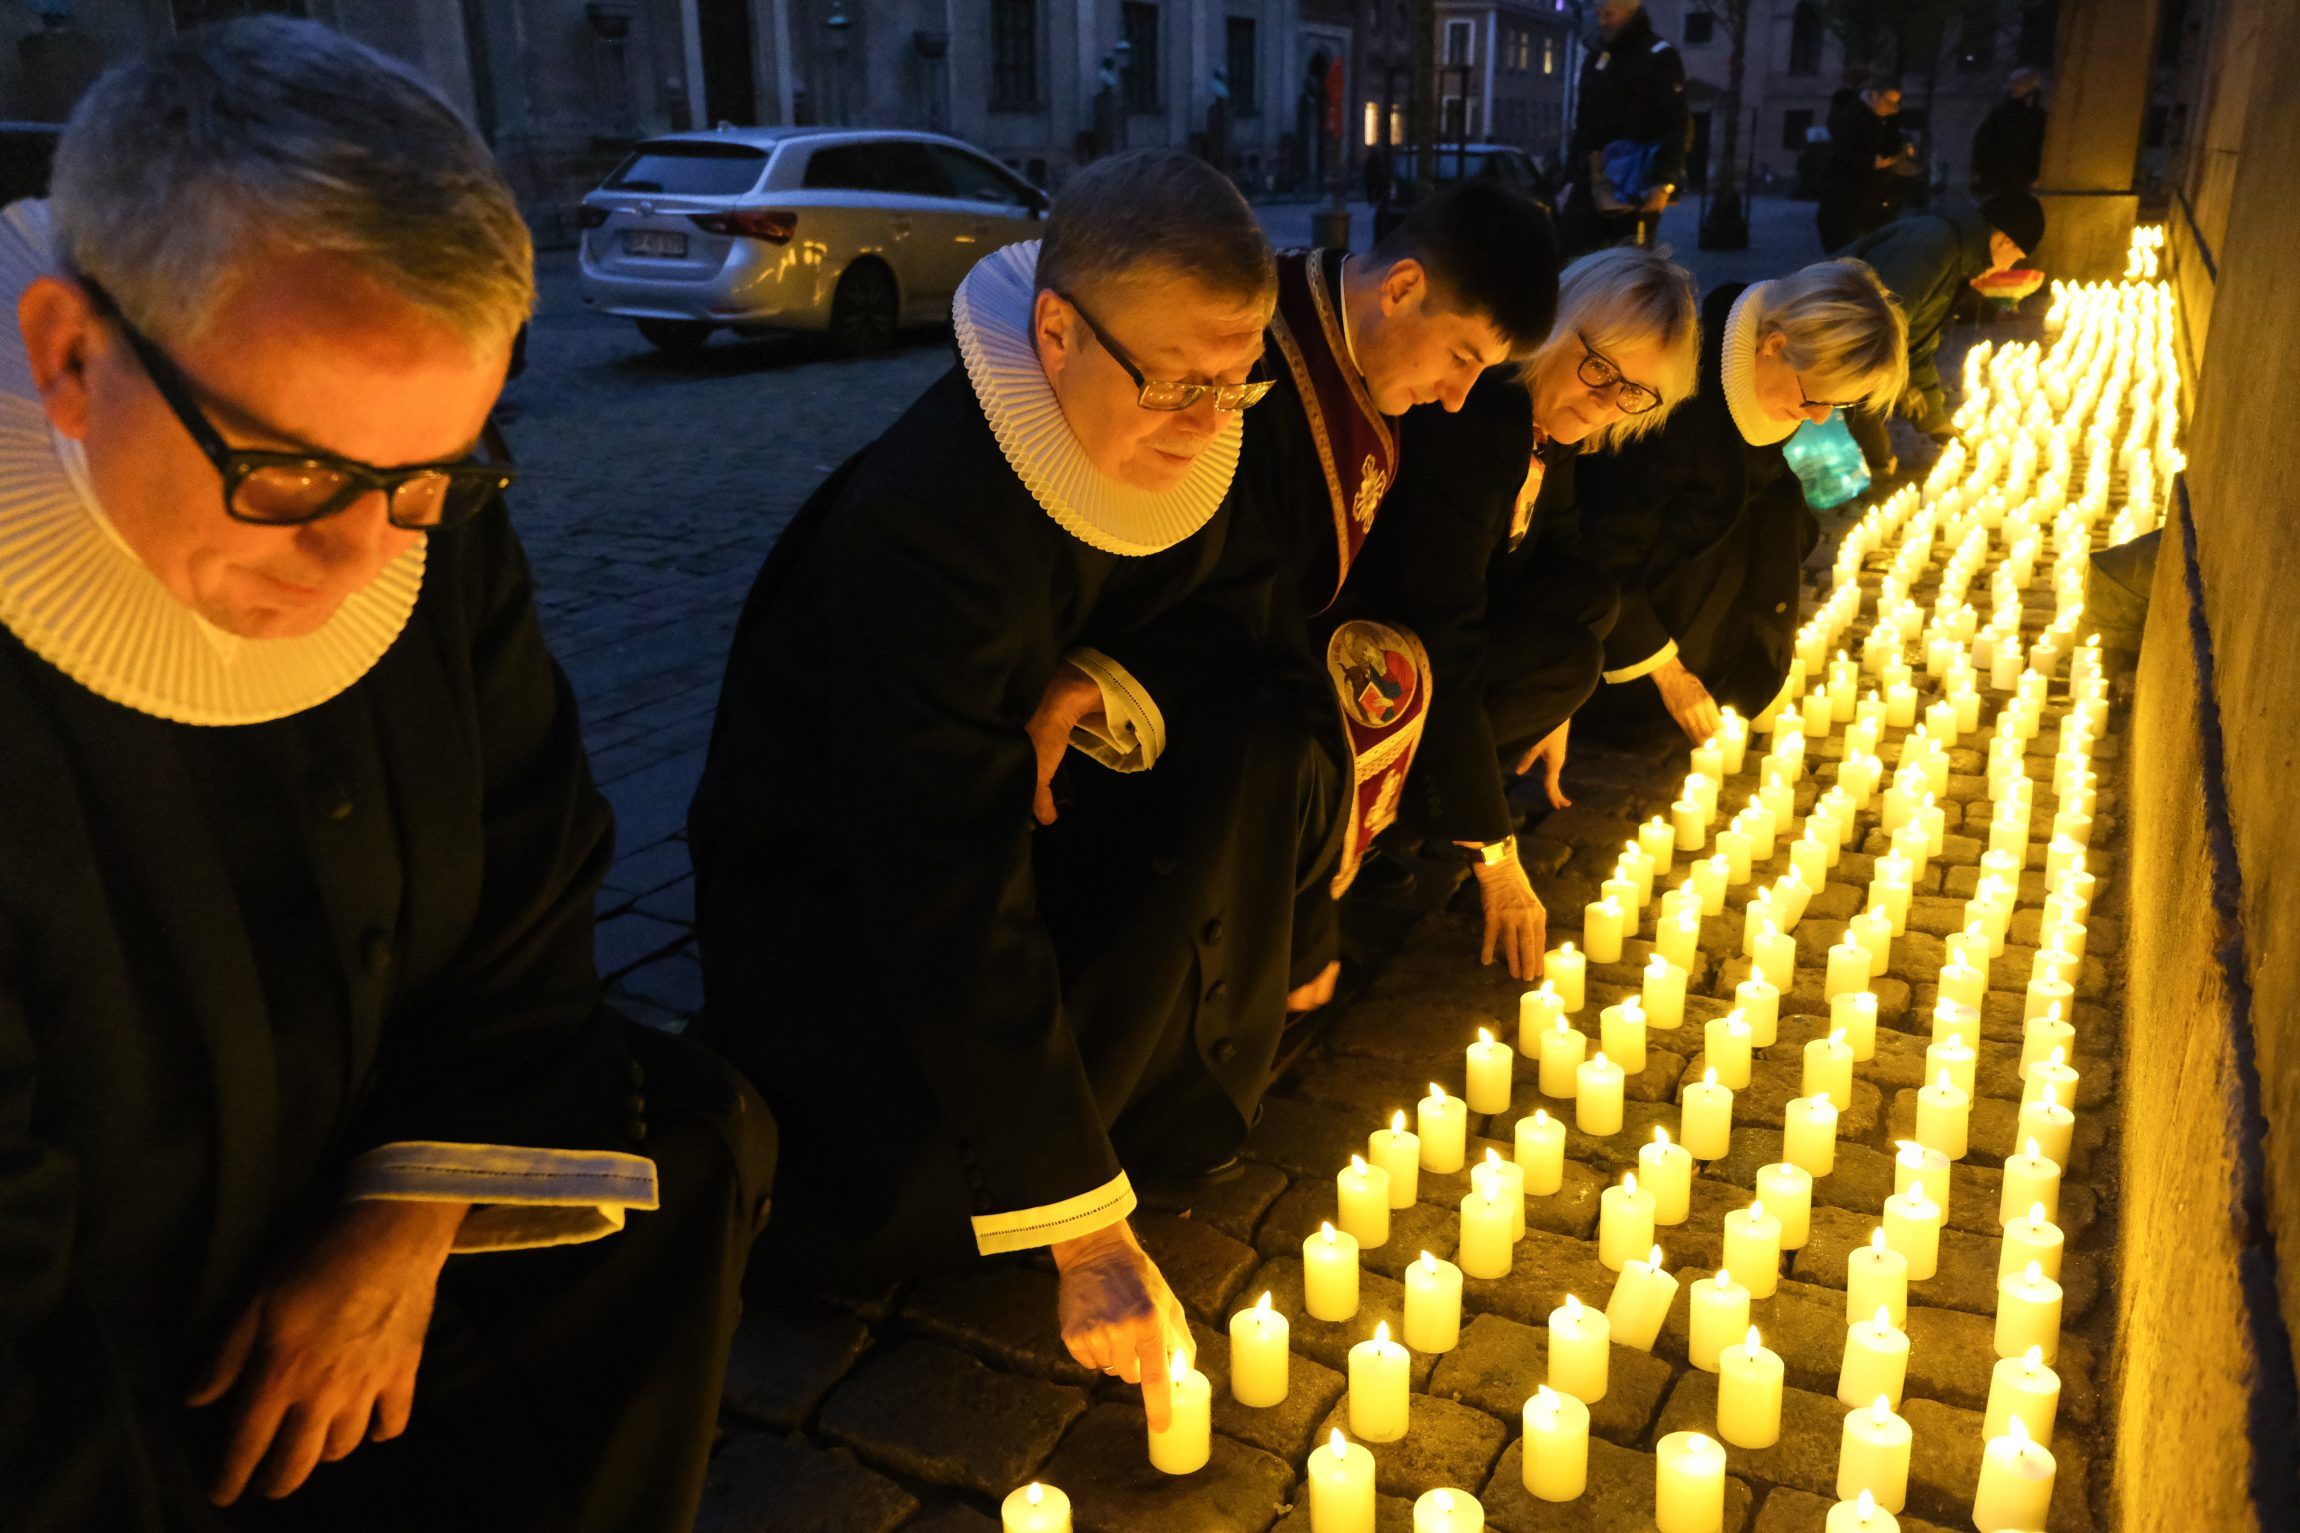 Næsten 10.000 lys for fred blev tændt ved Vor Frue kirke i København.